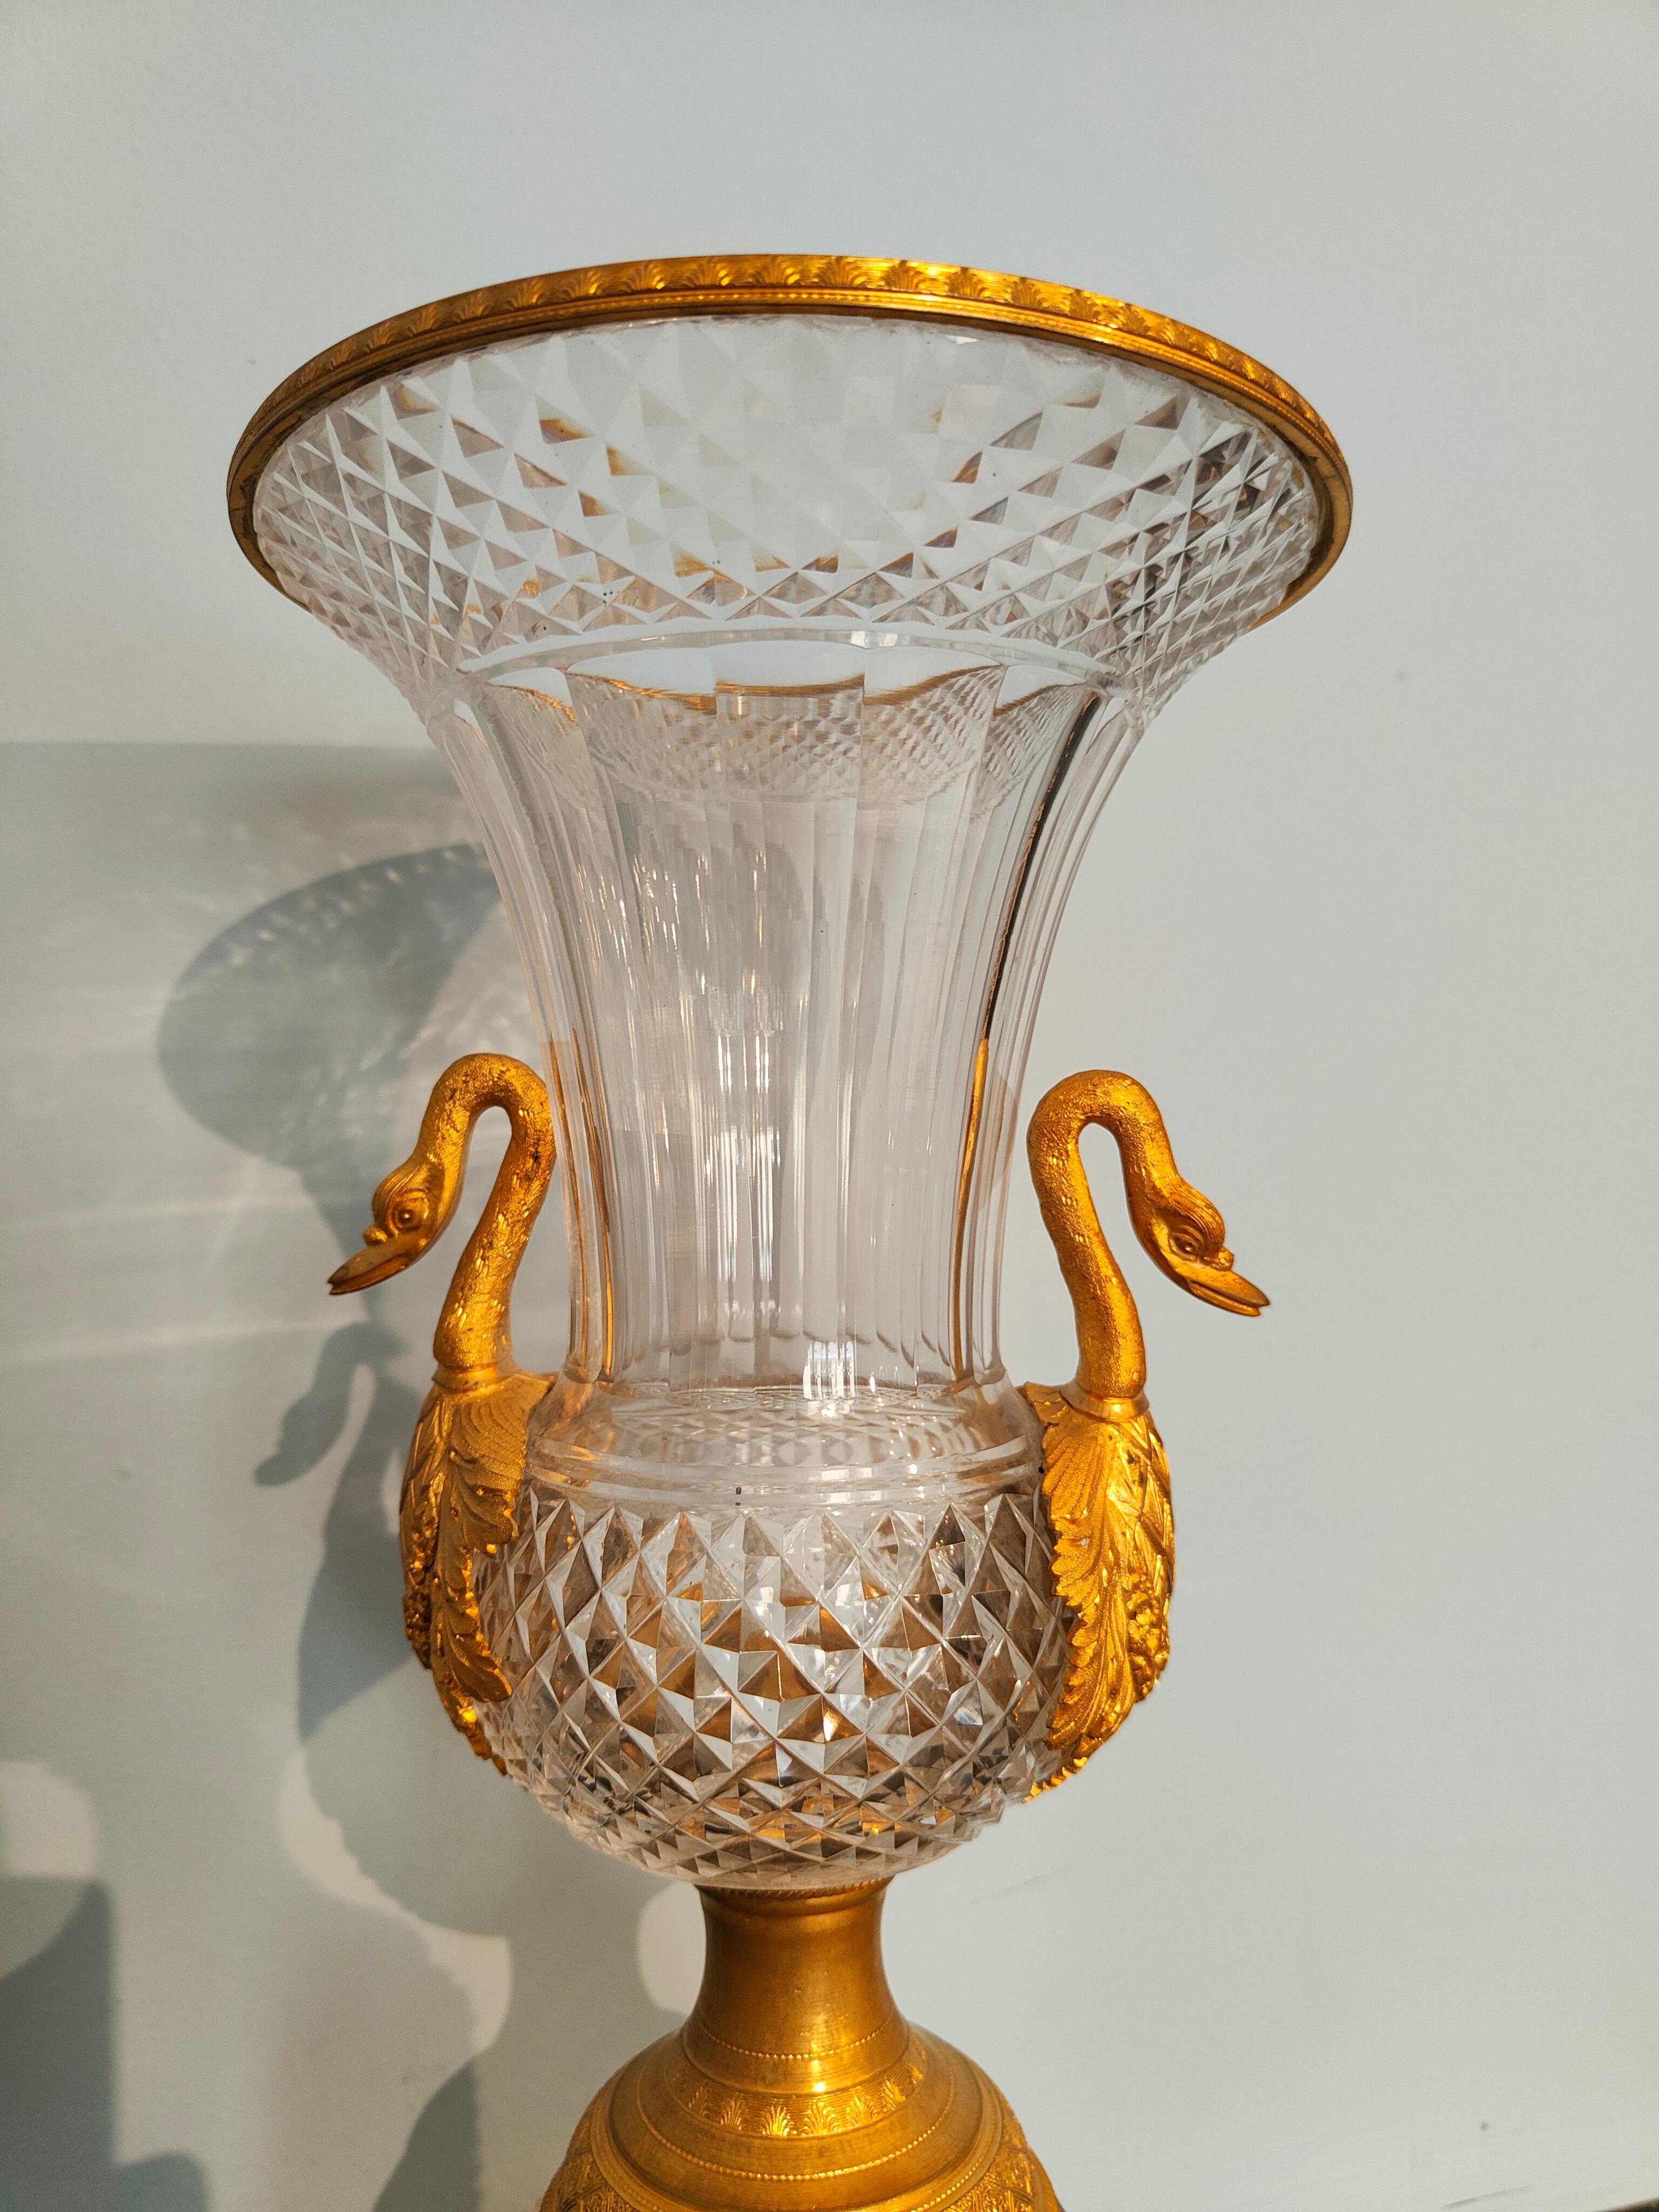 Ein Paar Vasen aus Kristall und Bronze aus der Empirezeit.
Bedeutendes Paar Vasen aus der Empirezeit, hergestellt in Frankreich in der ersten Hälfte des 19. Jahrhunderts. 
Die Vasen sind aus geschliffenem Kristall (vermutlich aus russischer